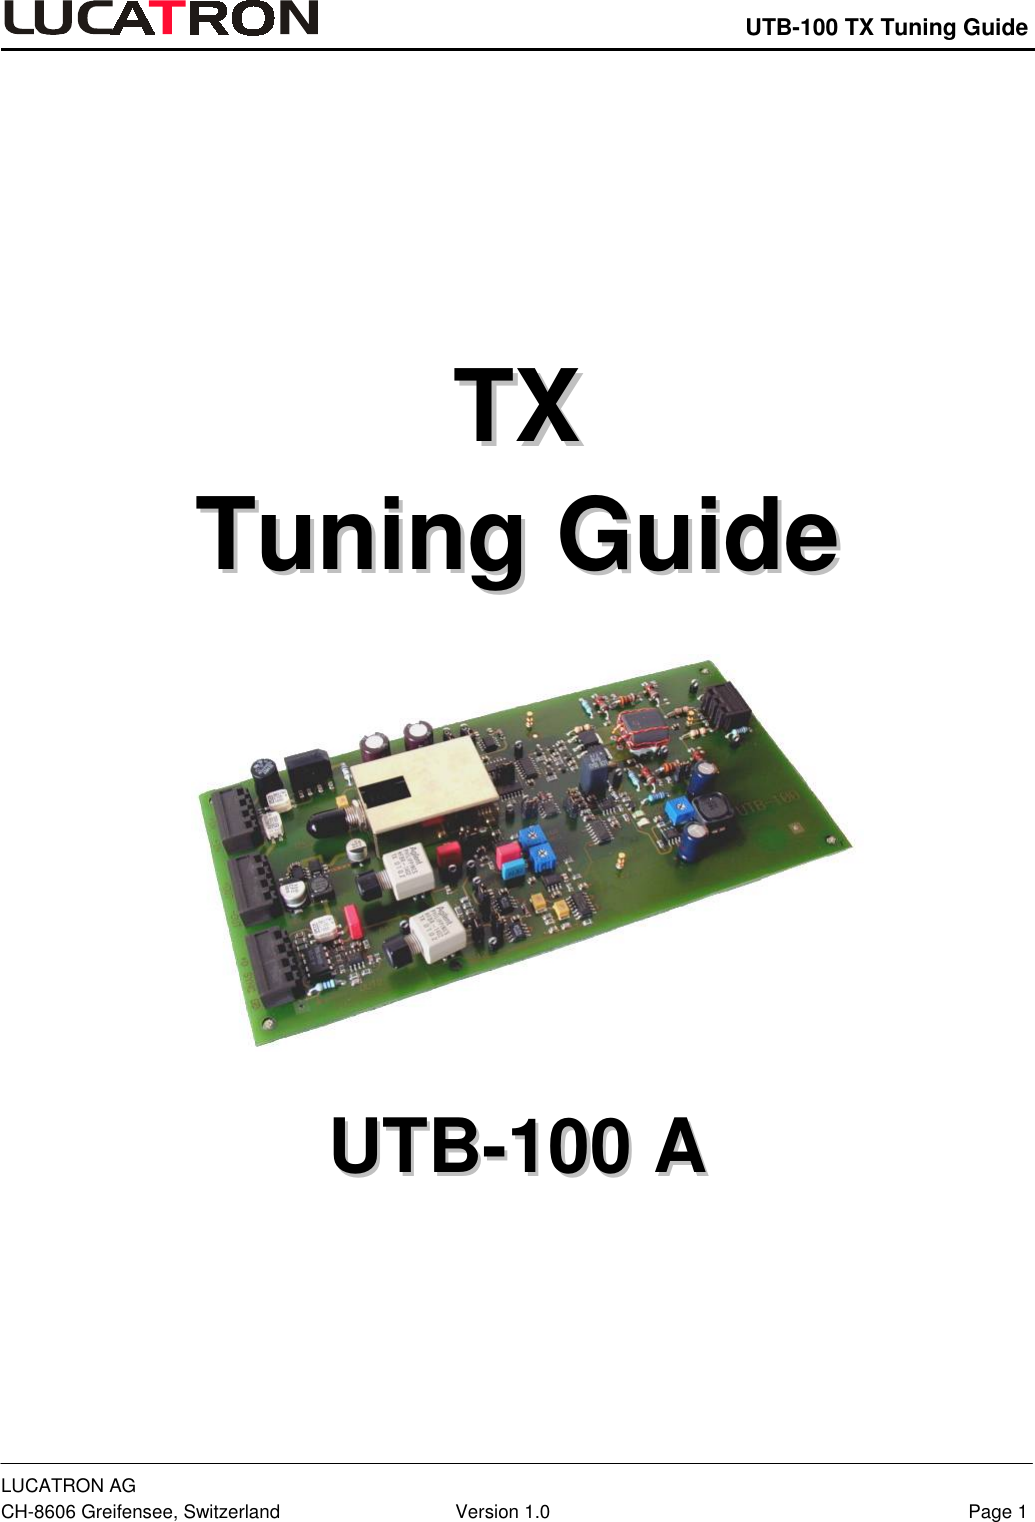    UTB-100 TX Tuning Guide LUCATRON AG CH-8606 Greifensee, Switzerland  Version 1.0  Page 1        TTXX  TTuunniinngg  GGuuiiddee     UUTTBB--110000  AA  